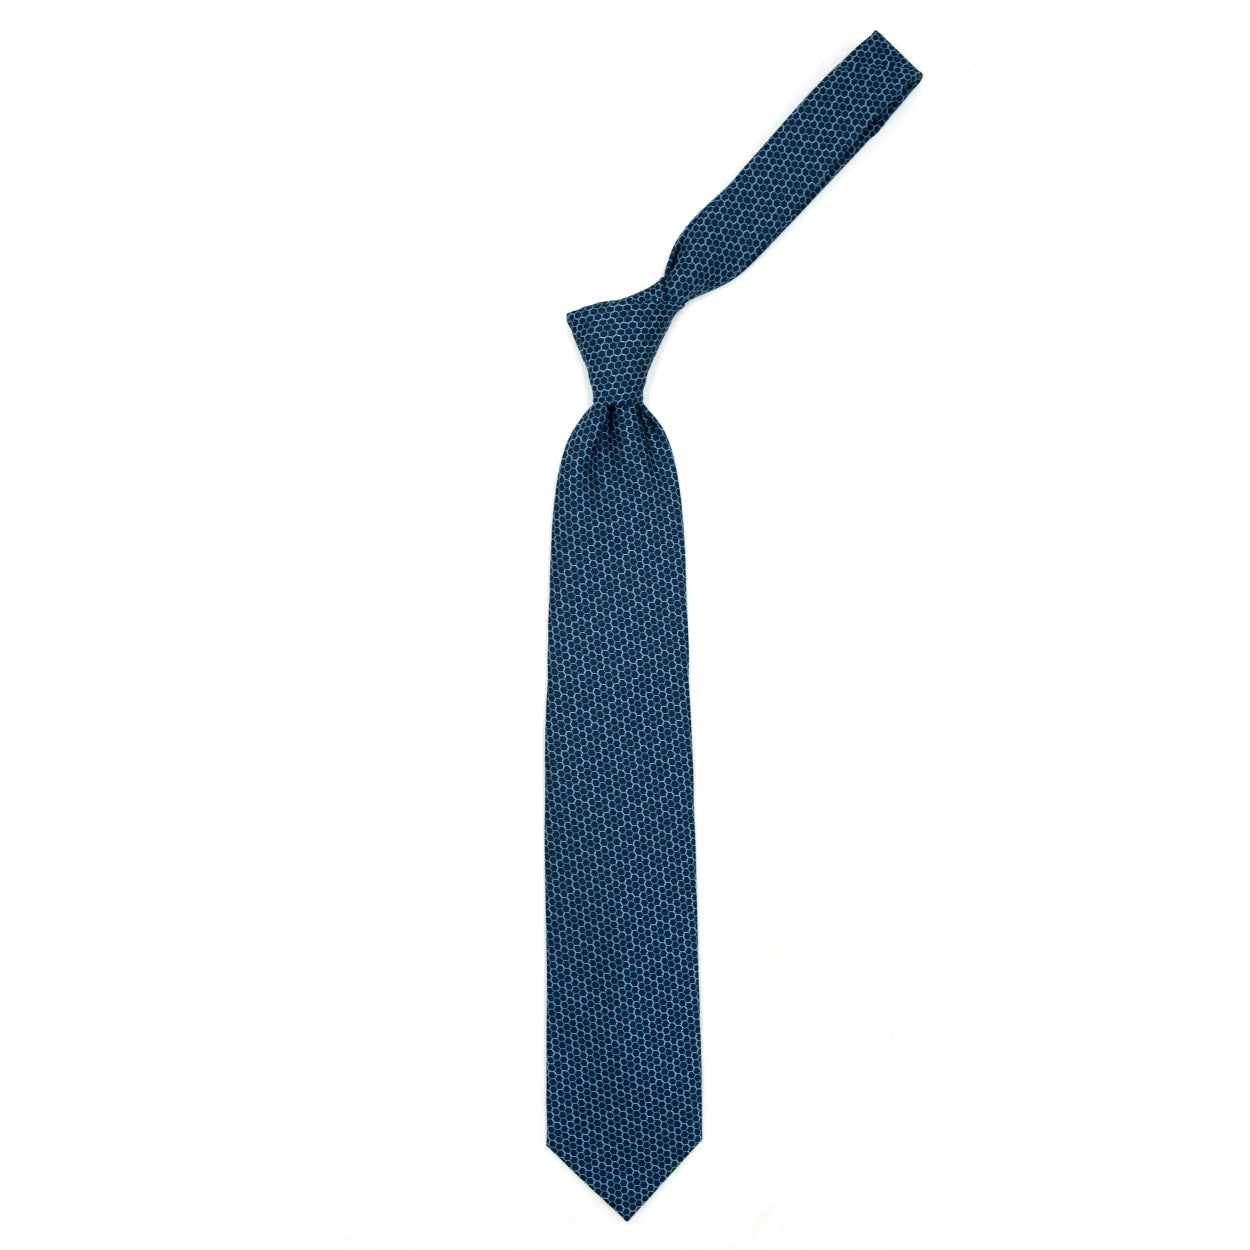 Cravatta blu con cerchi azzurri